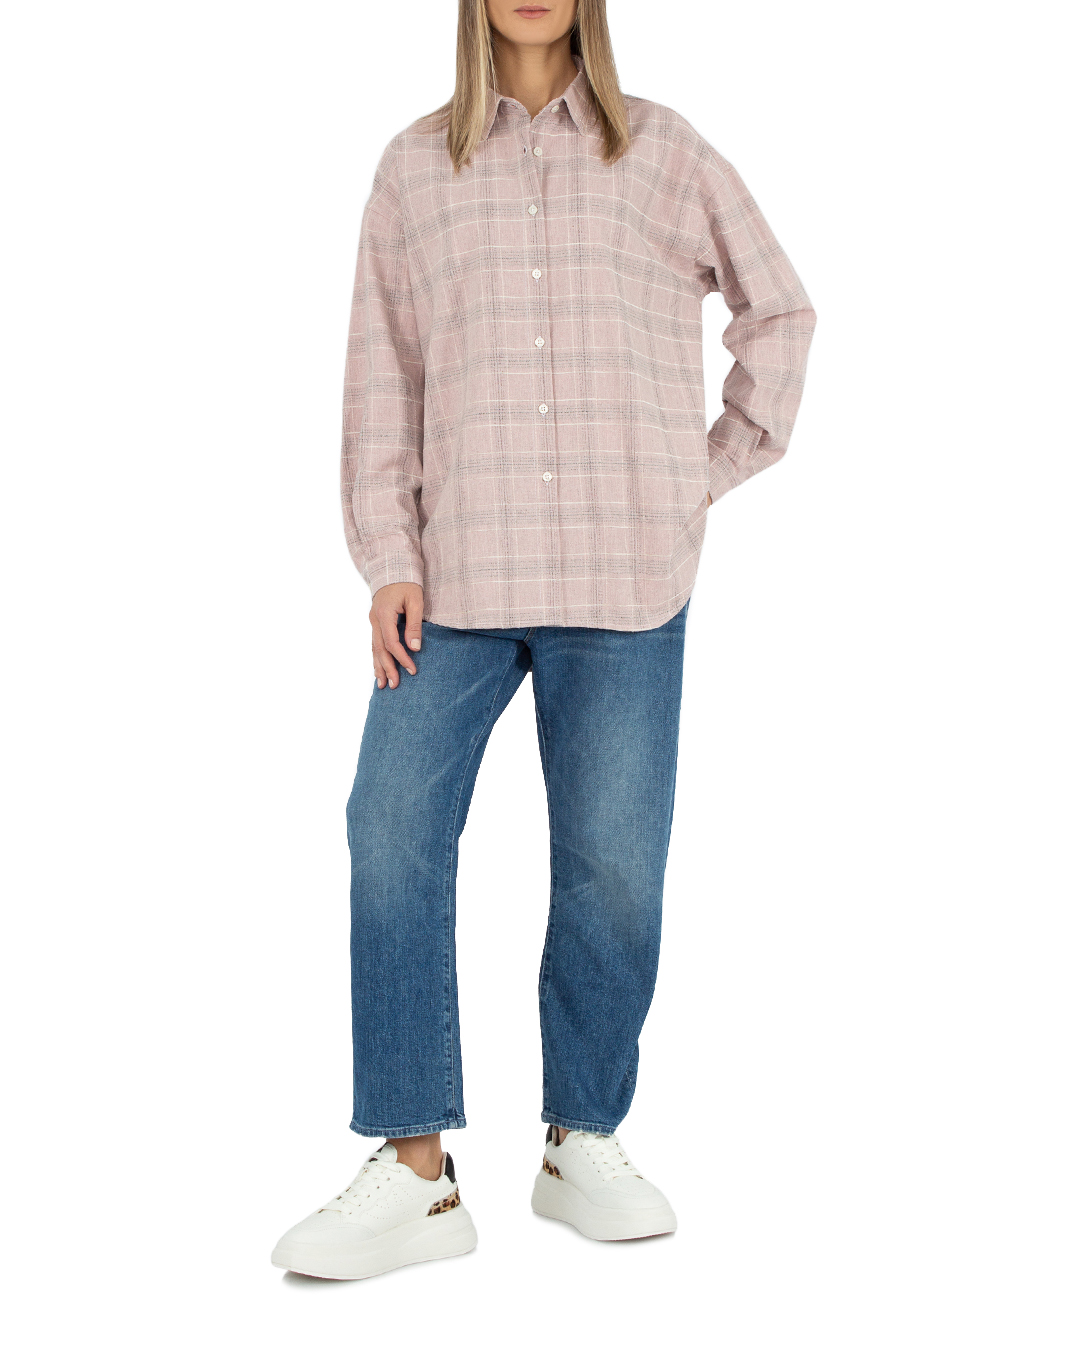 хлопковая рубашка ANTELOPE THE LABEL A2.980 св.розовый+принт l, размер l, цвет св.розовый+принт A2.980 св.розовый+принт l - фото 2